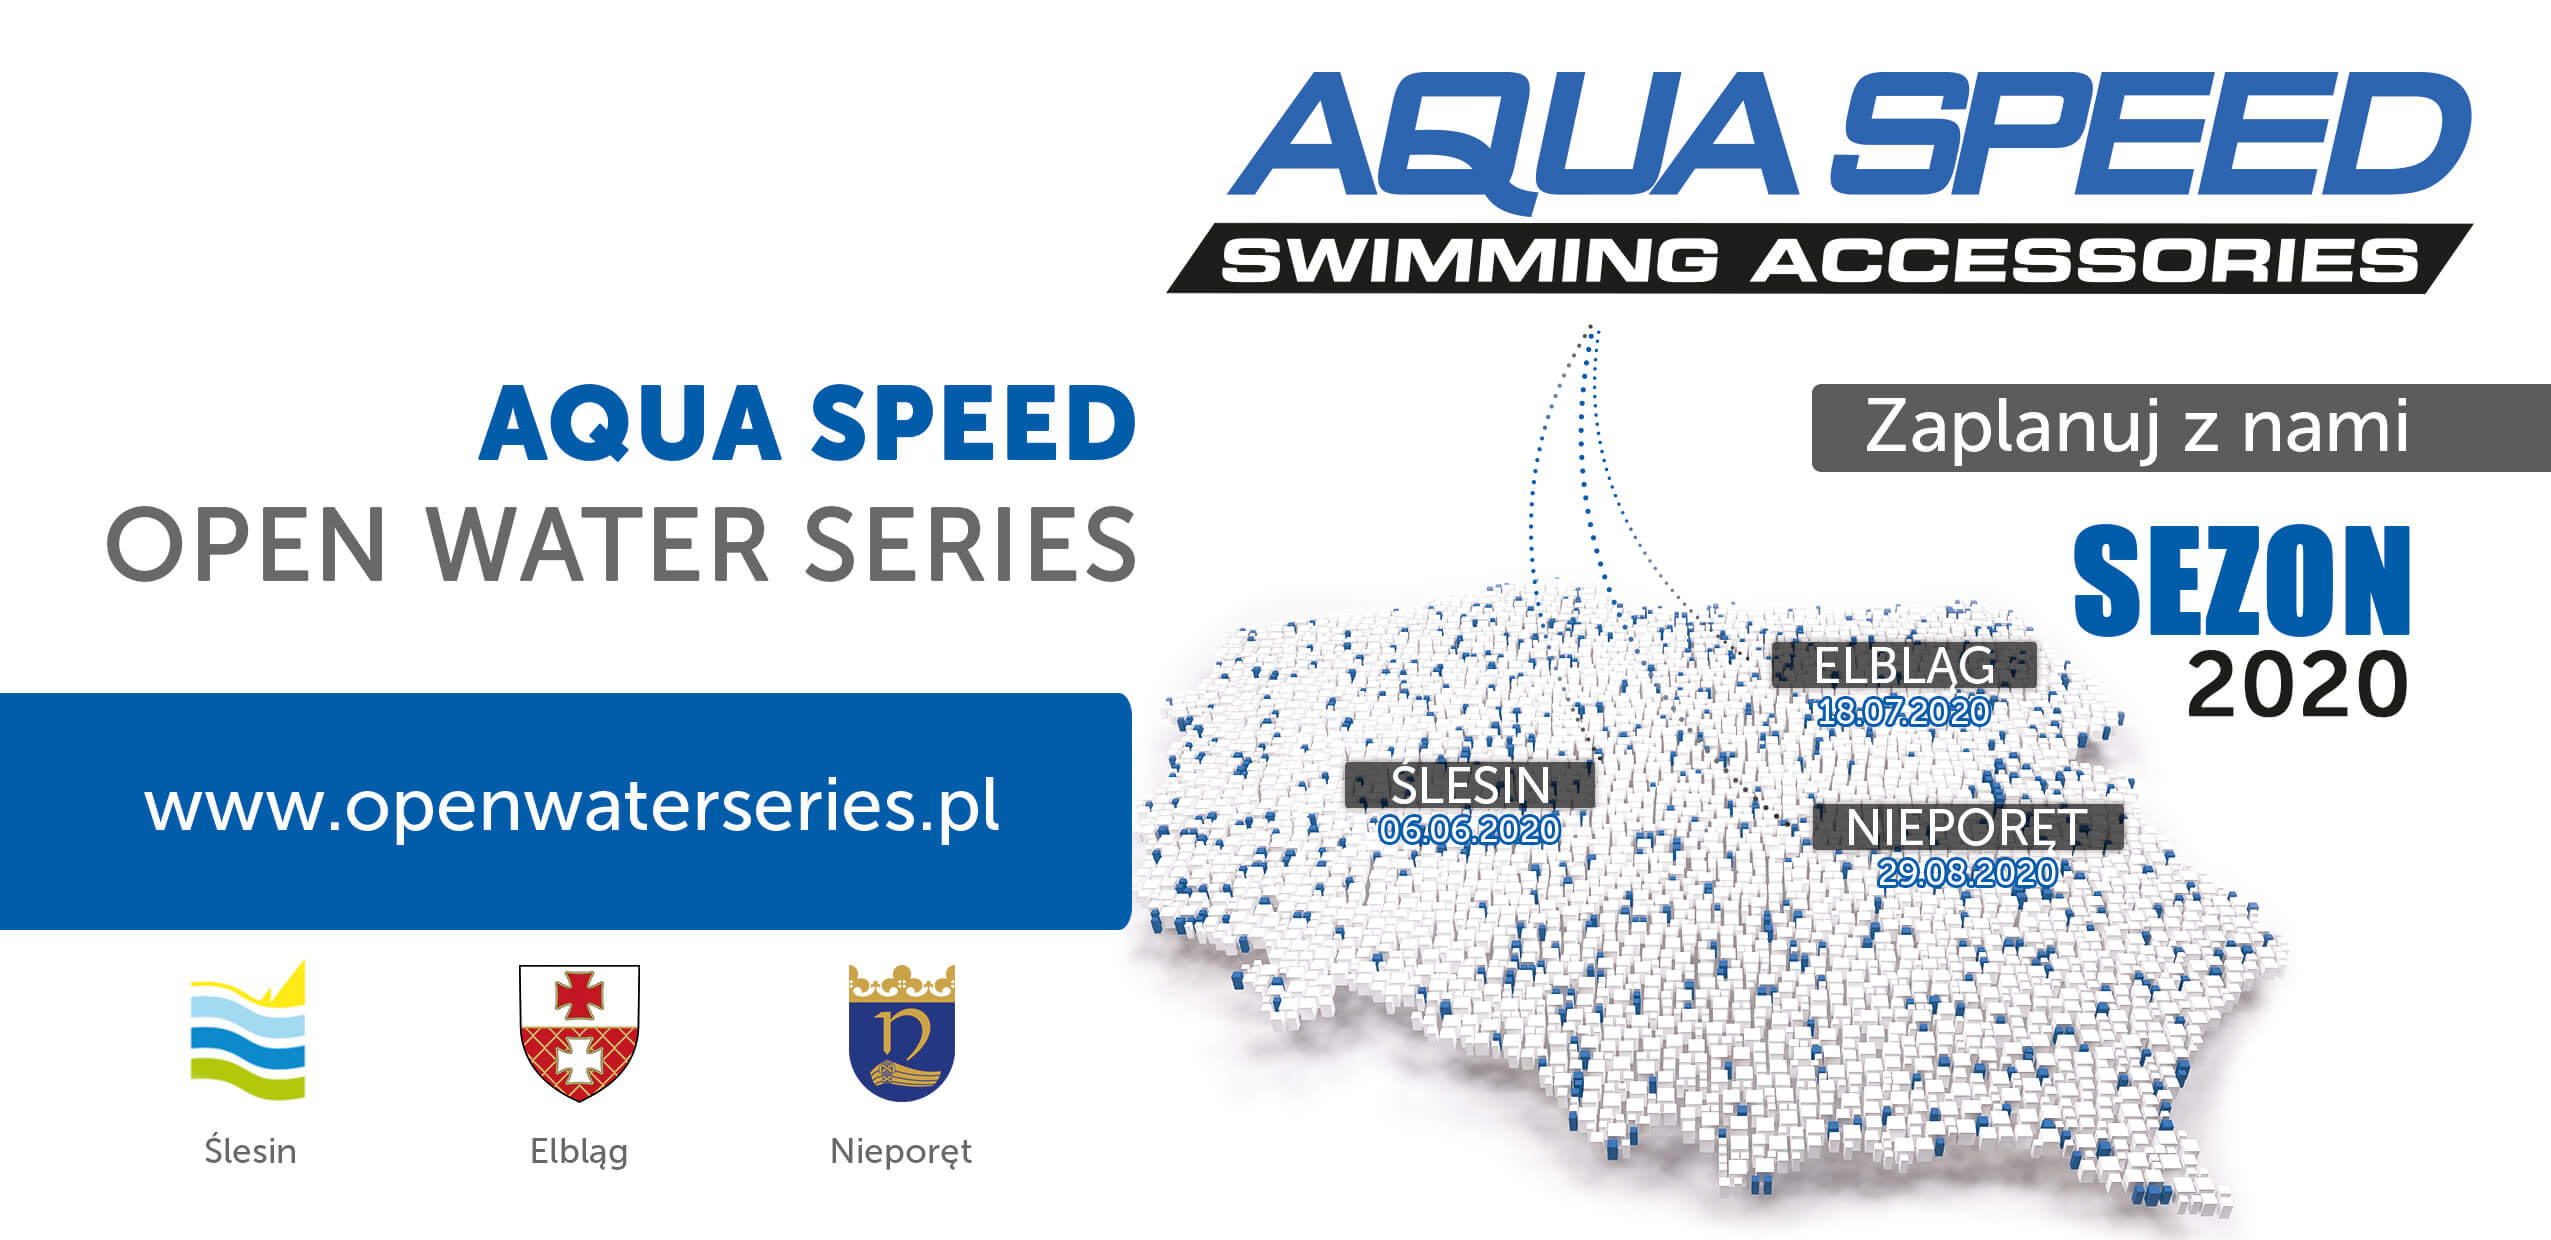 Aquaspeed Open Water Series